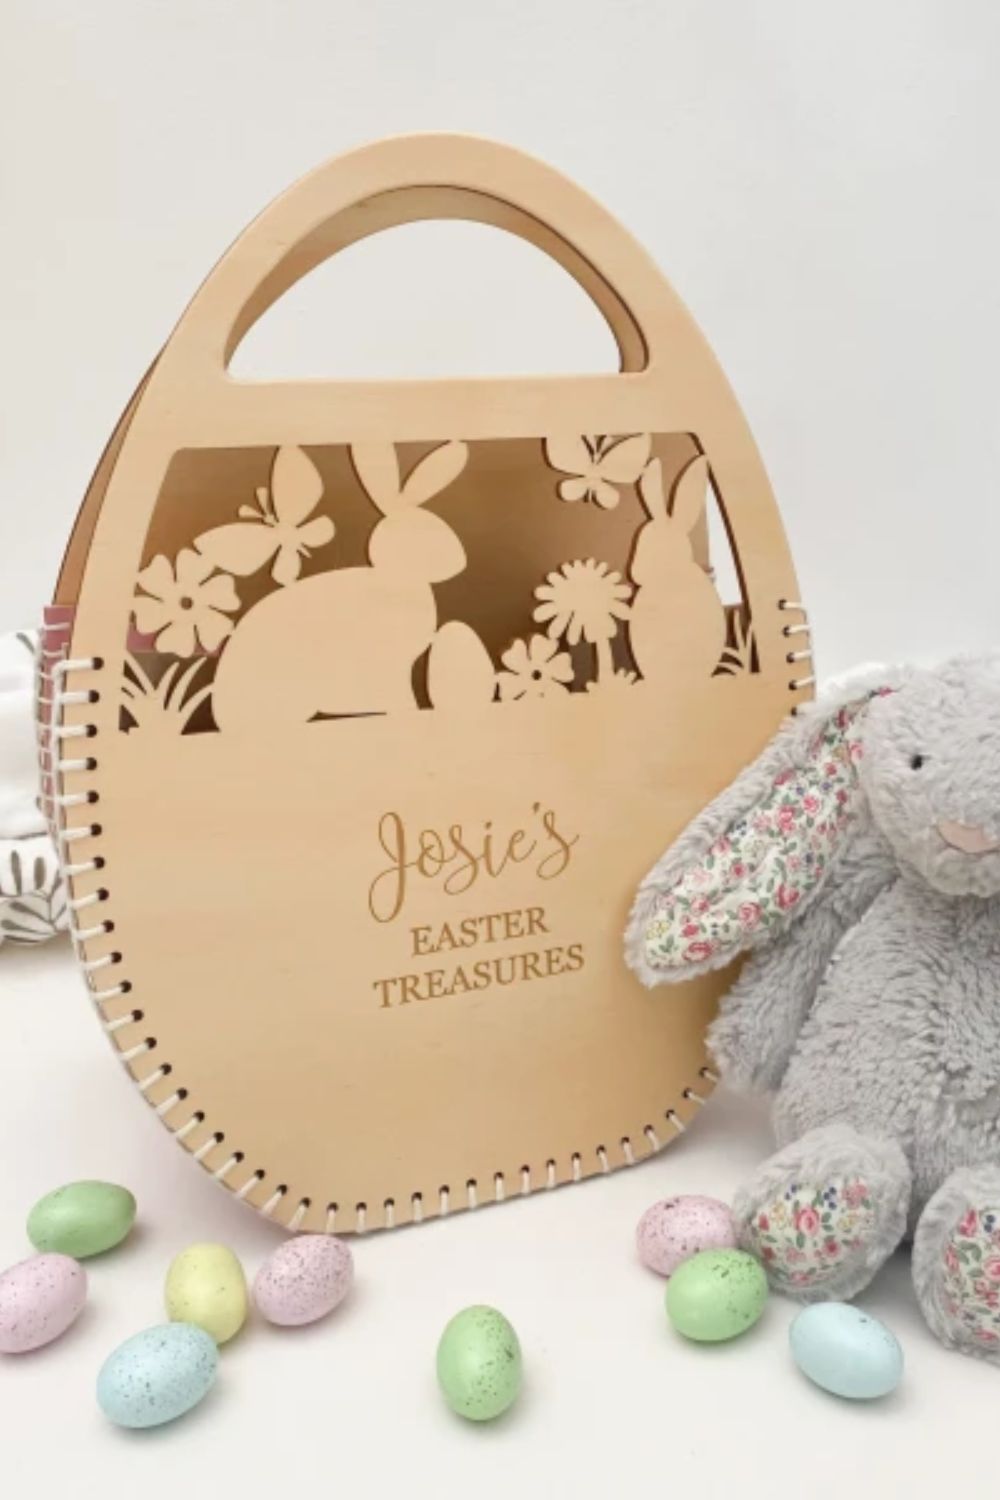 josies-personalised-timber-easter-hunt-basket